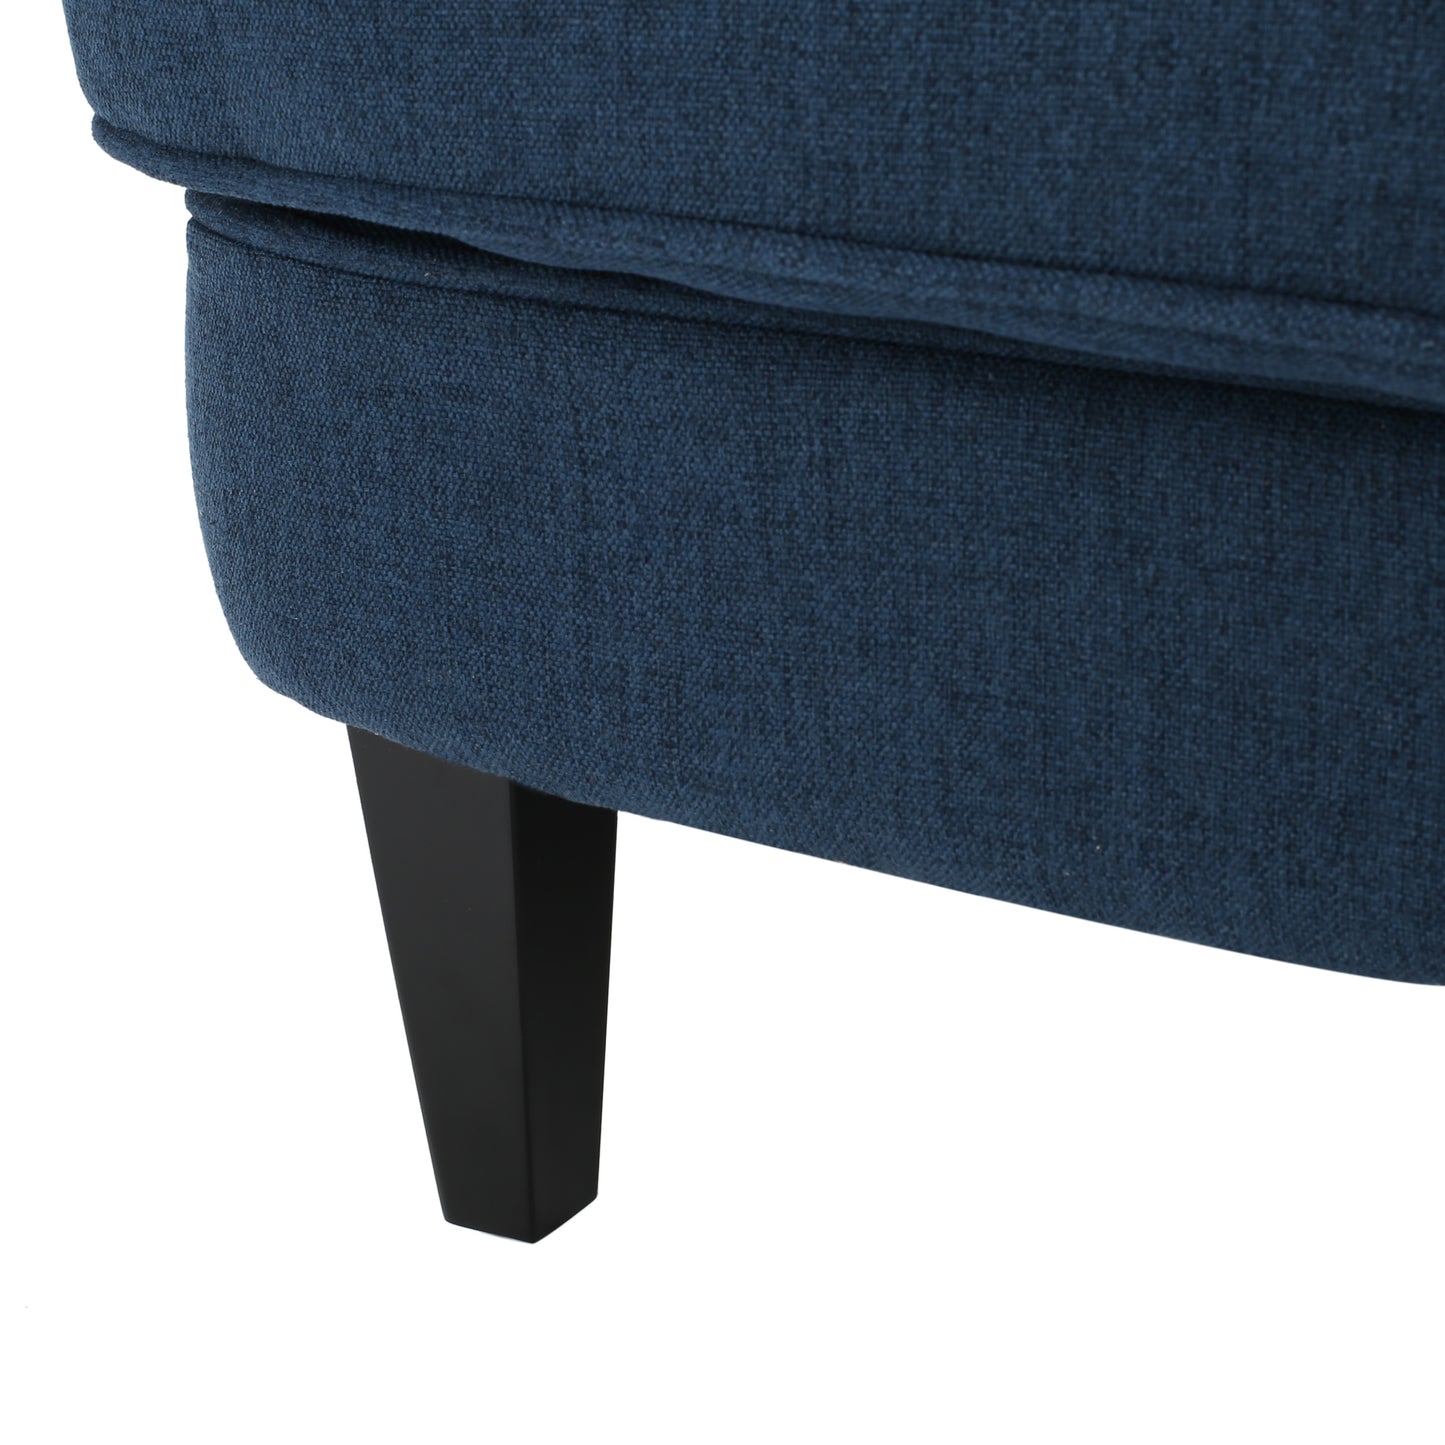 Aveton Tufted Fabric Club Chair